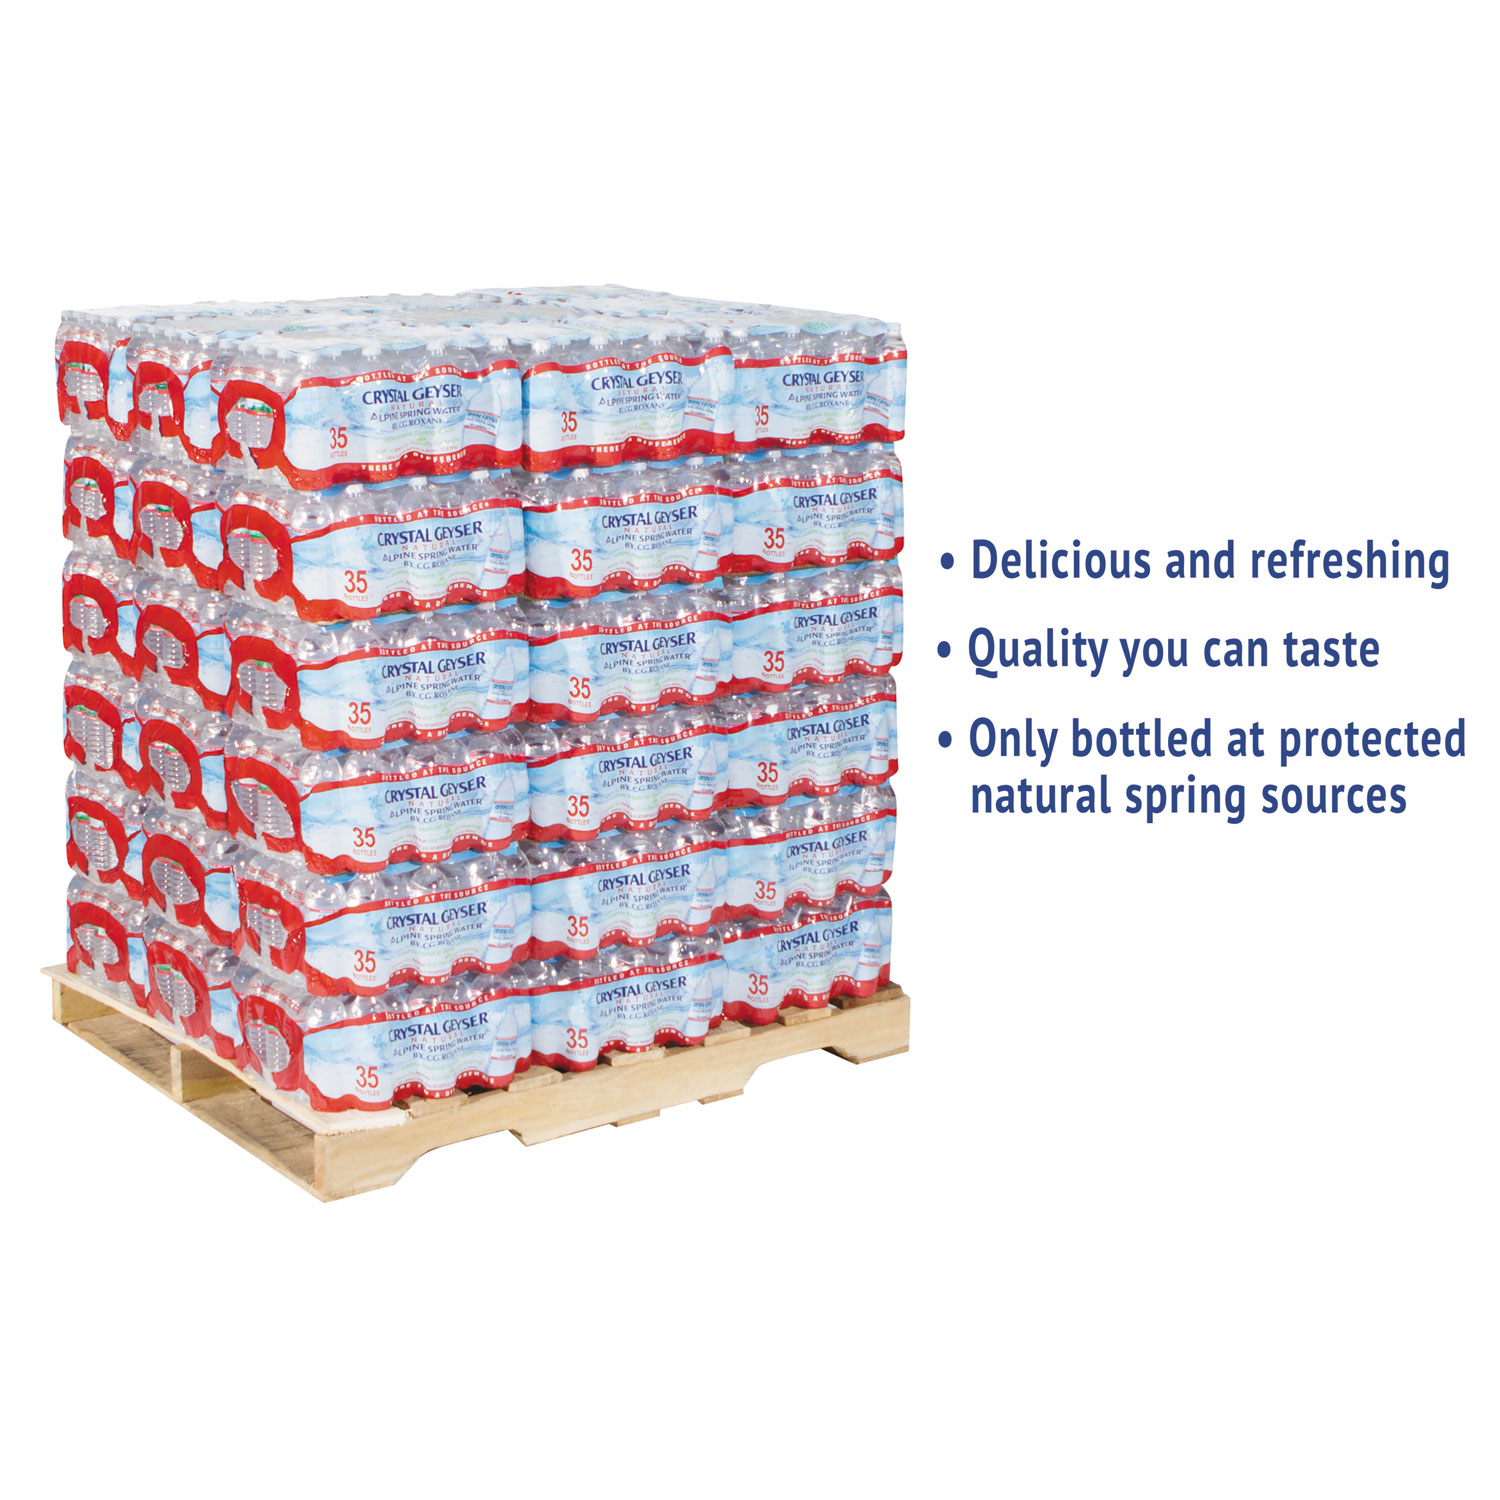  Crystal Geyser 35001 8 Alpine Spring Water, 16.9 oz Bottle, 35/Case, 54 Cases/Pallet (CGW35001) 